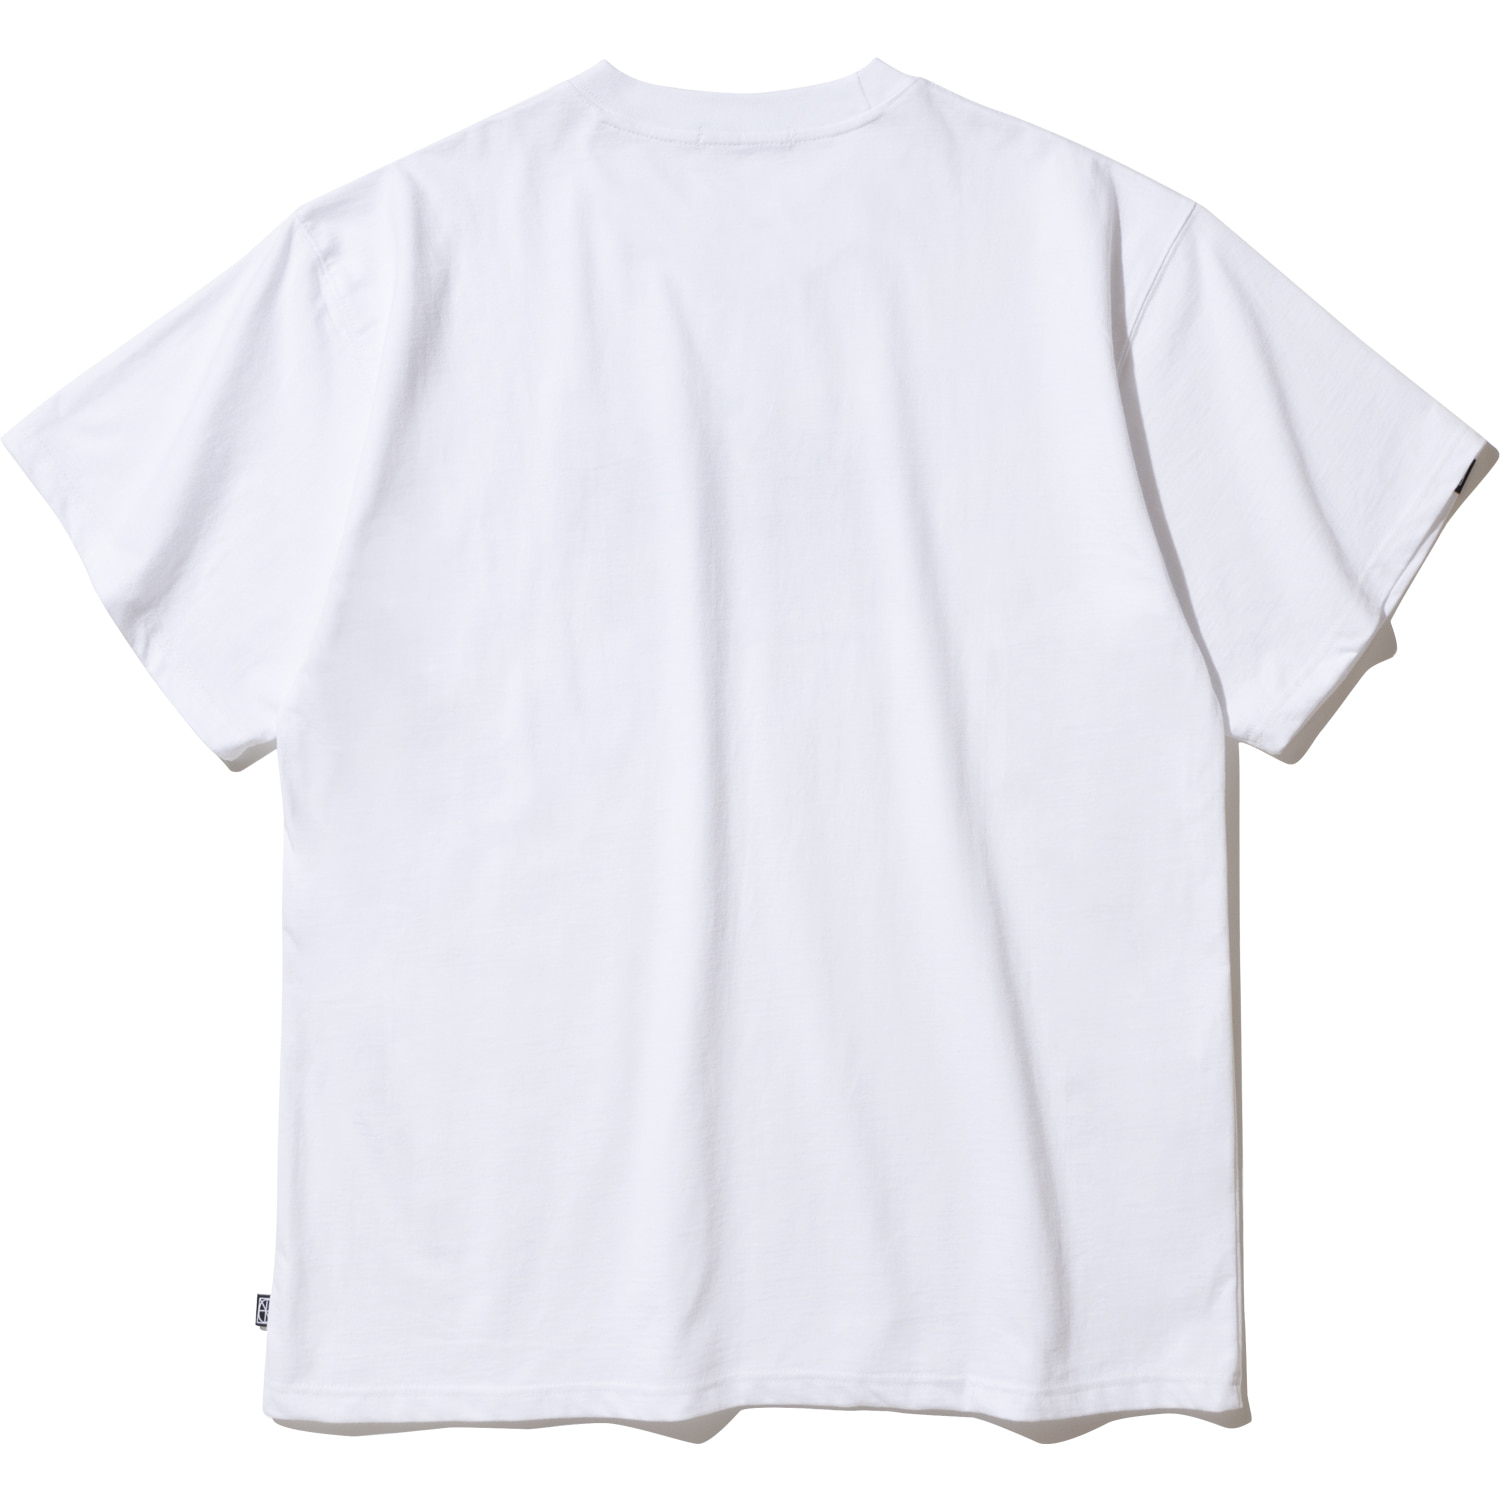 Metal Logo T-Shirts - White,NOT4NERD